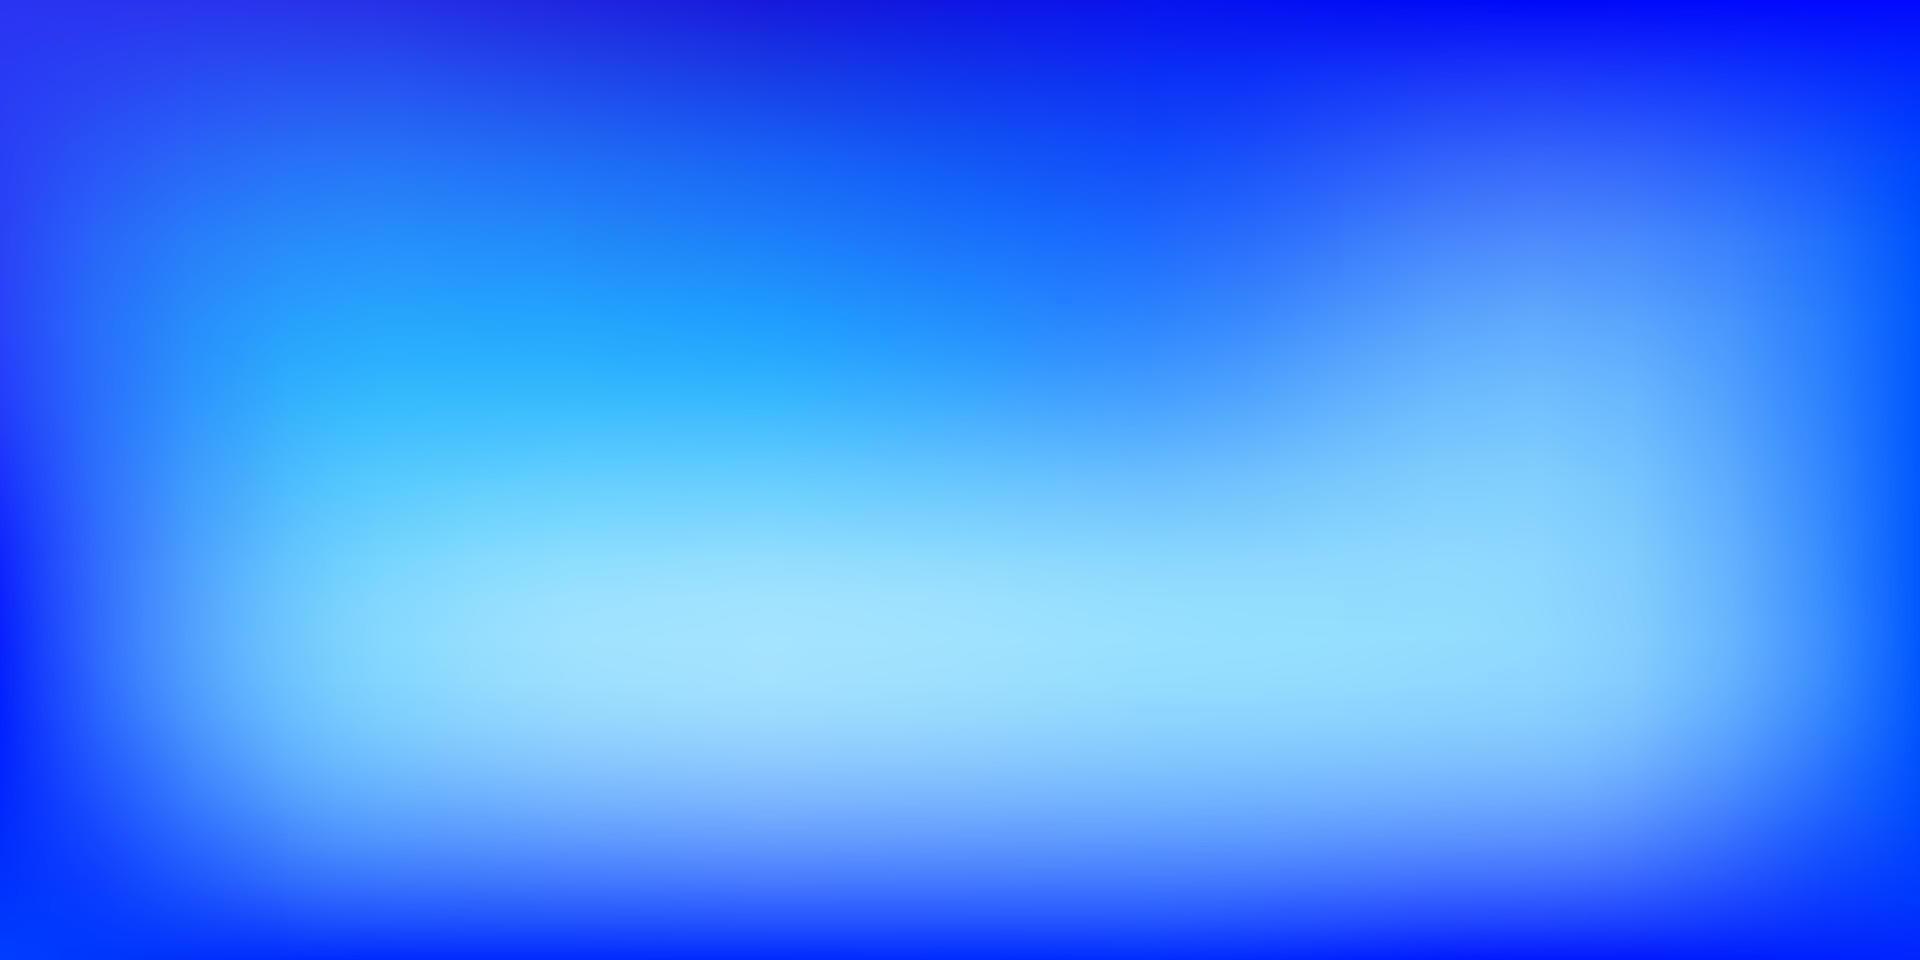 ljusrosa, blå suddighetsmönster för vektor. vektor